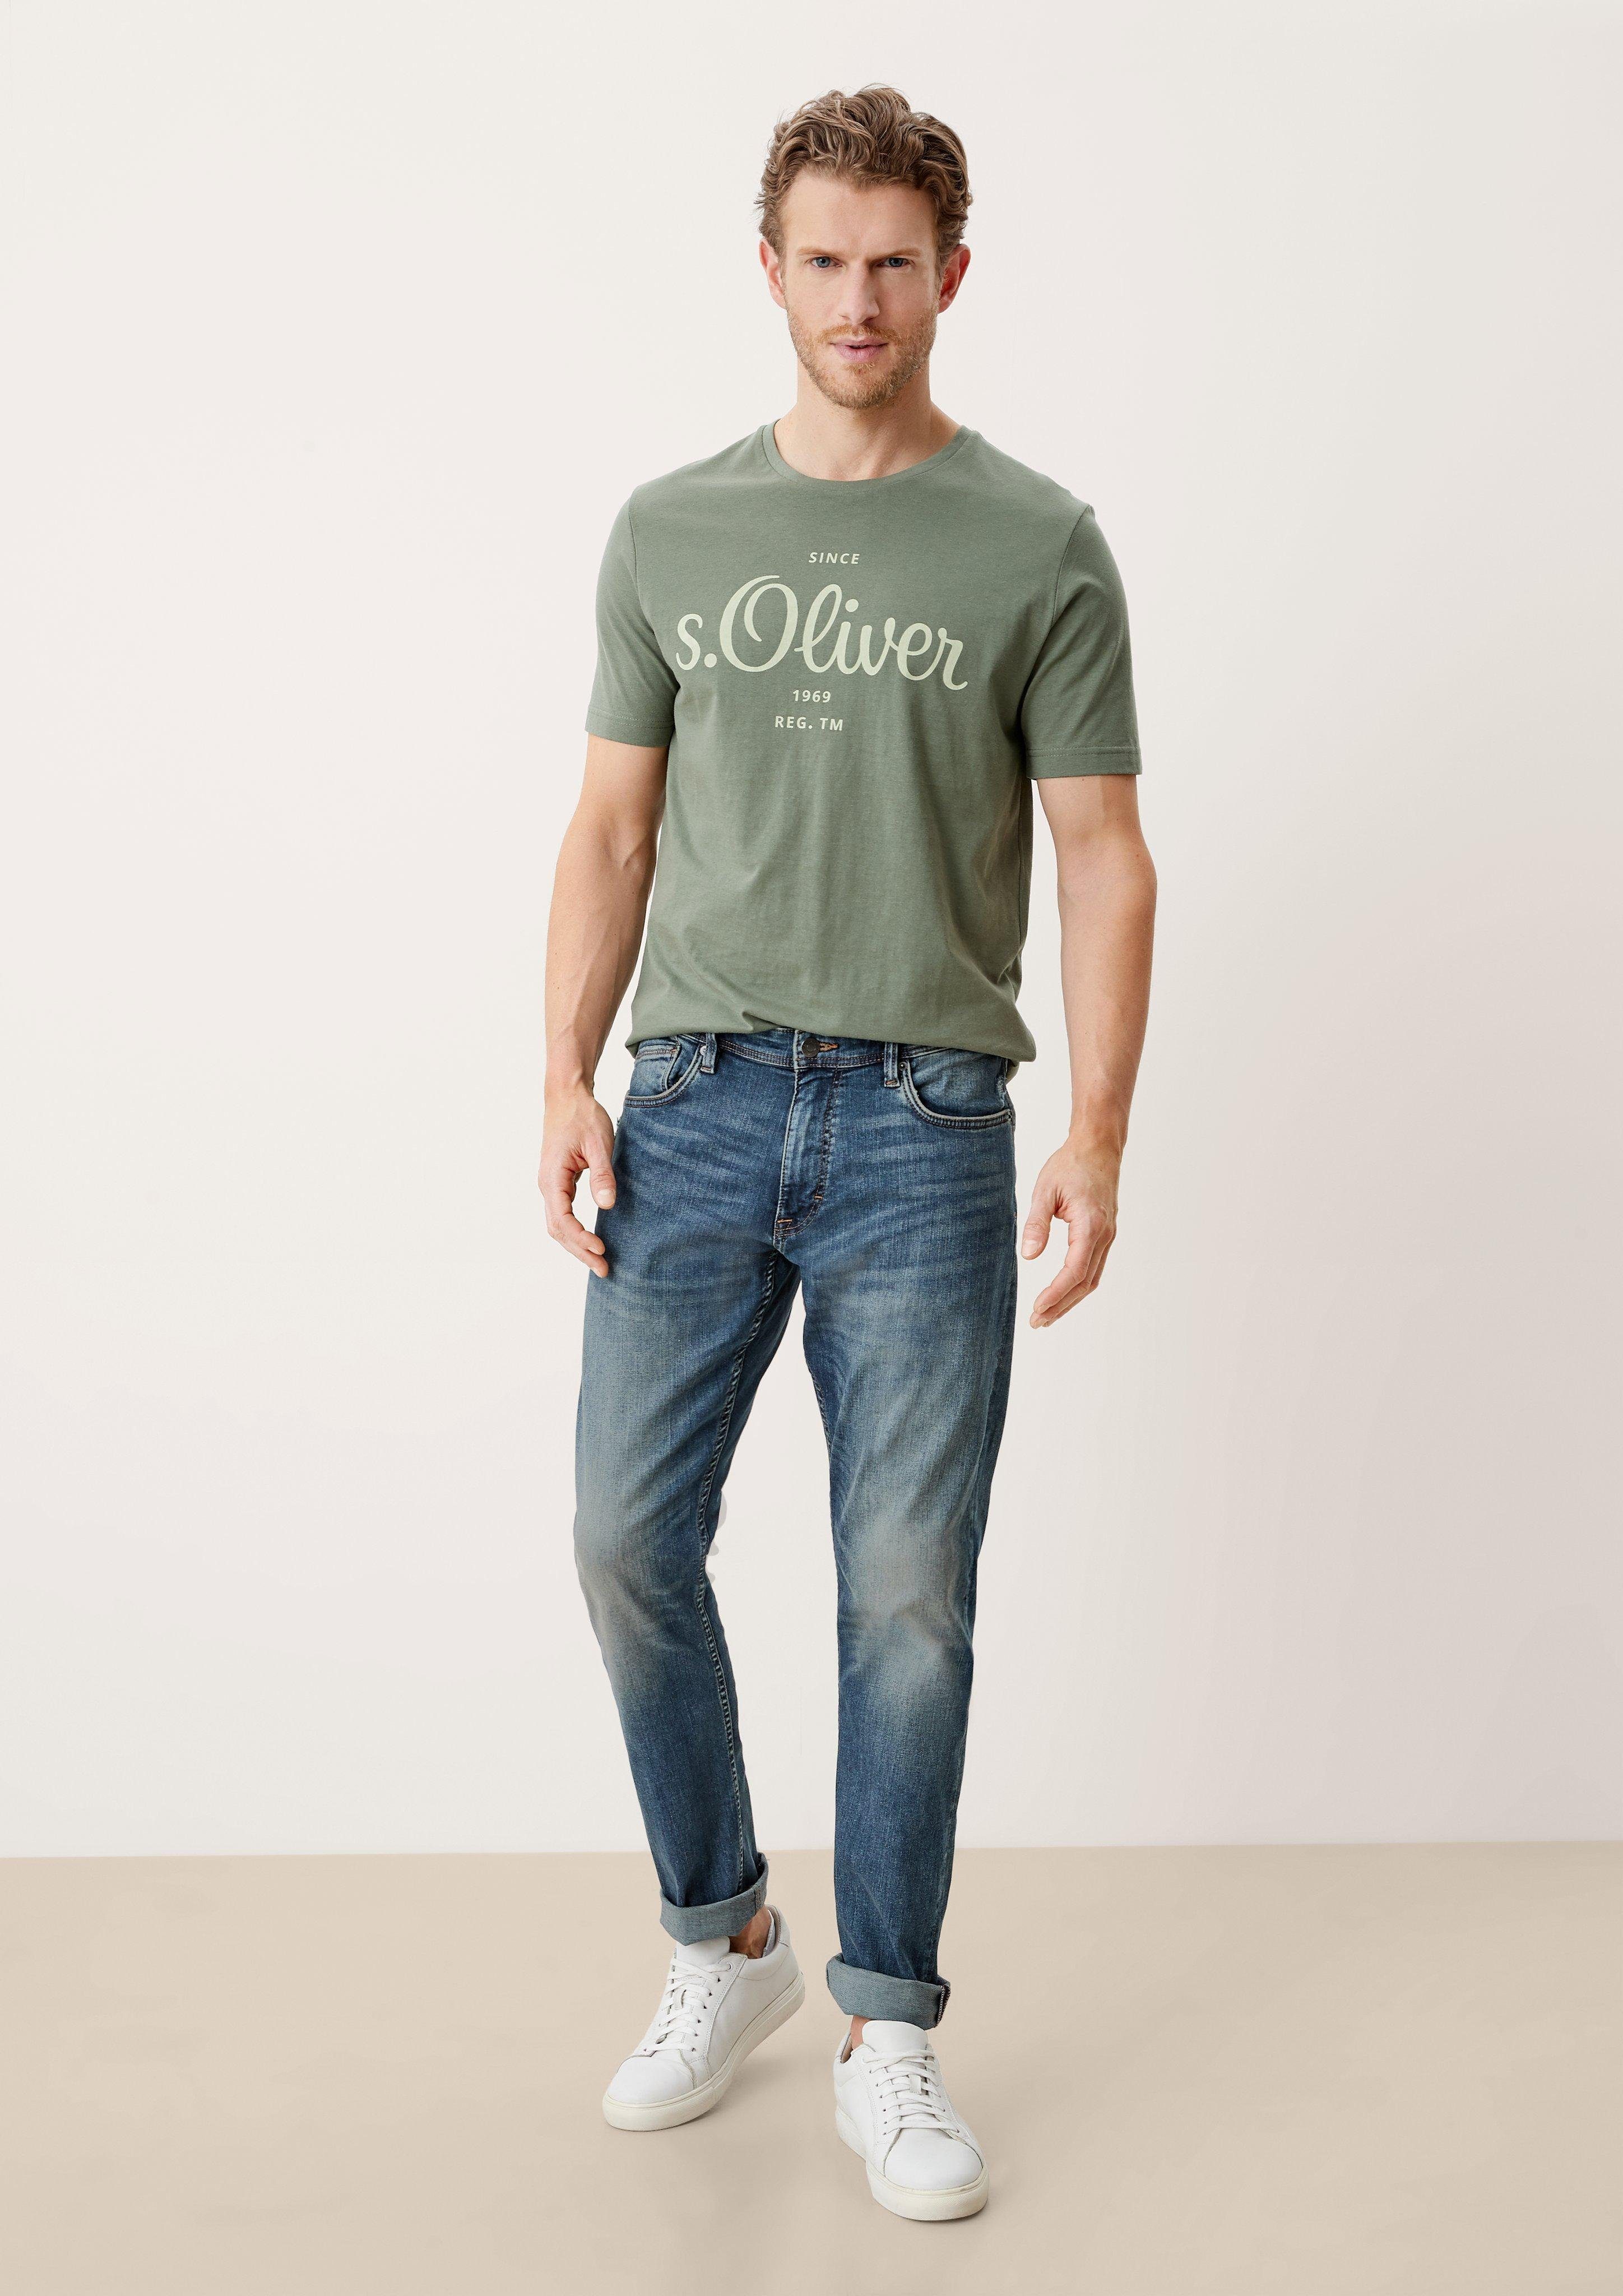 s.Oliver 5-Pocket-Jeans Fit sretche Mid Keith Leg blue light Rise / / Slim Waschung Destroyes, / Jeans Slim